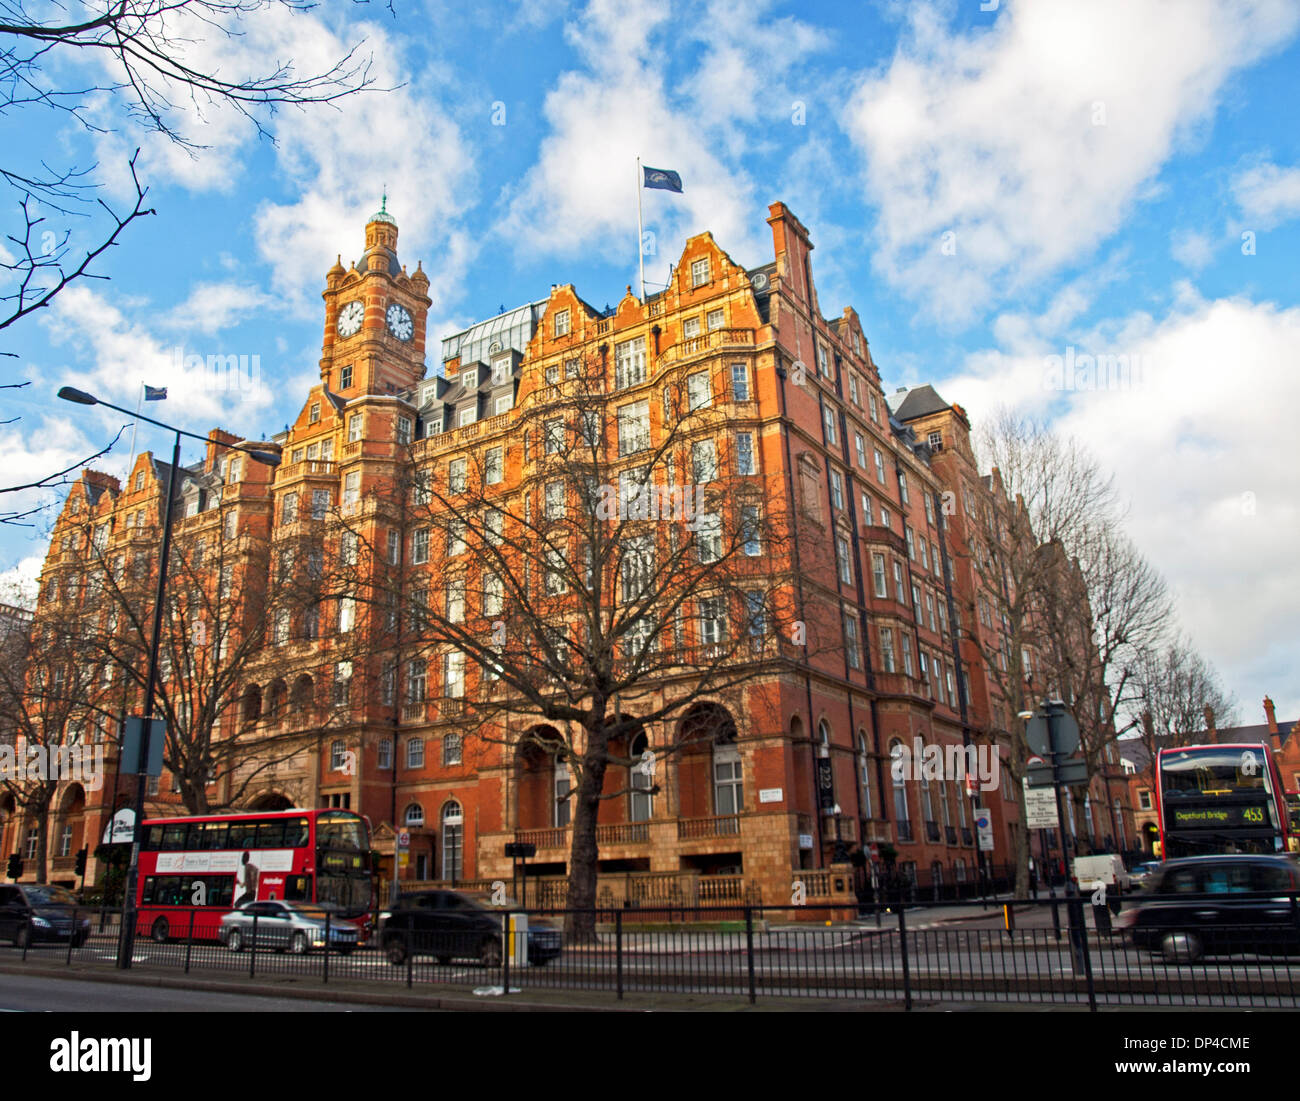 The Landmark Hotel, Marylebone, London, England, United Kingdom Stock Photo